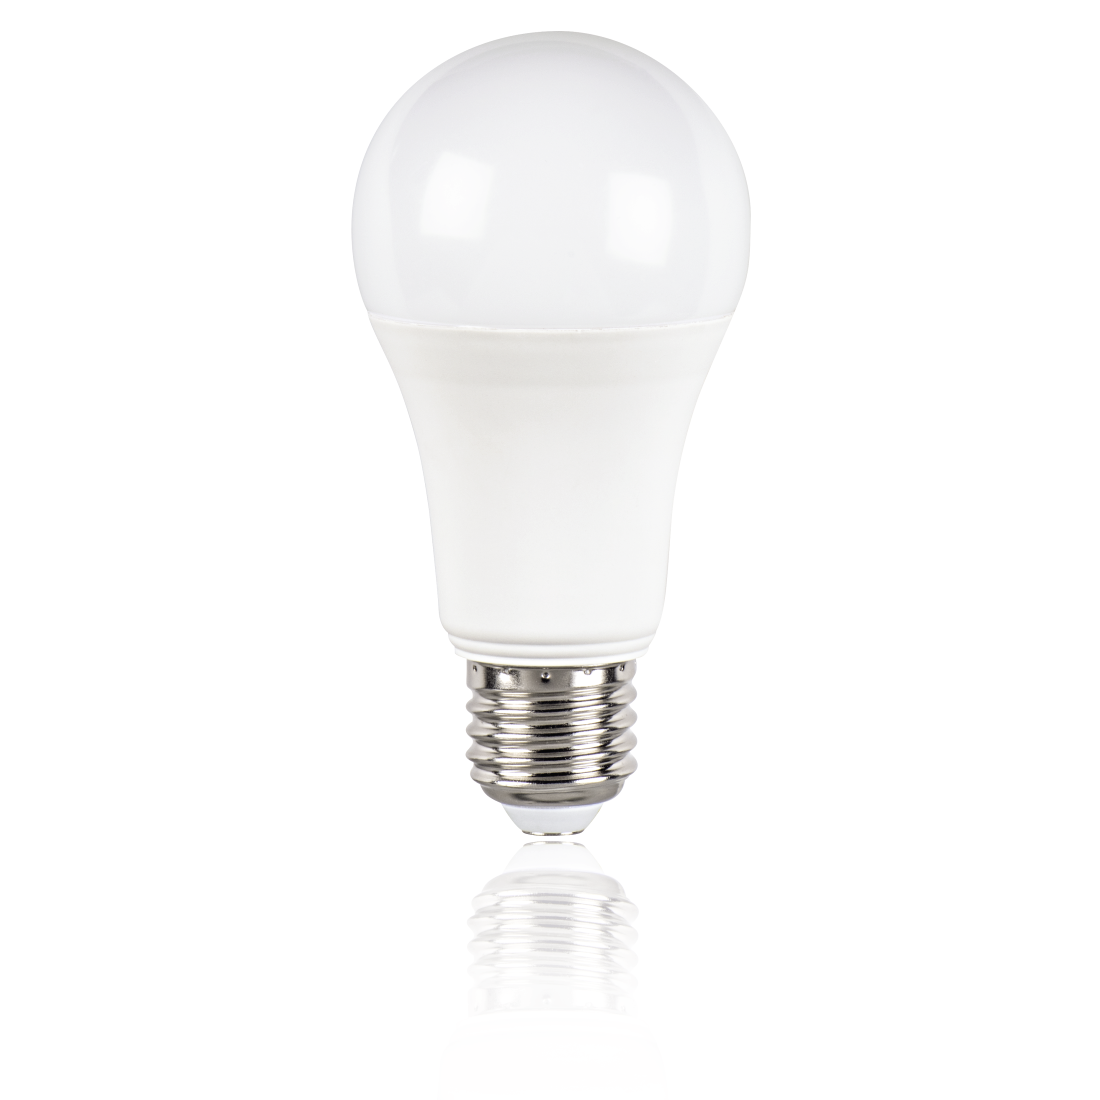 abx2 Druckfähige Abbildung 2 - Xavax, LED-Lampe, E27, 1521lm ersetzt 100W, Glühlampe, Tageslicht